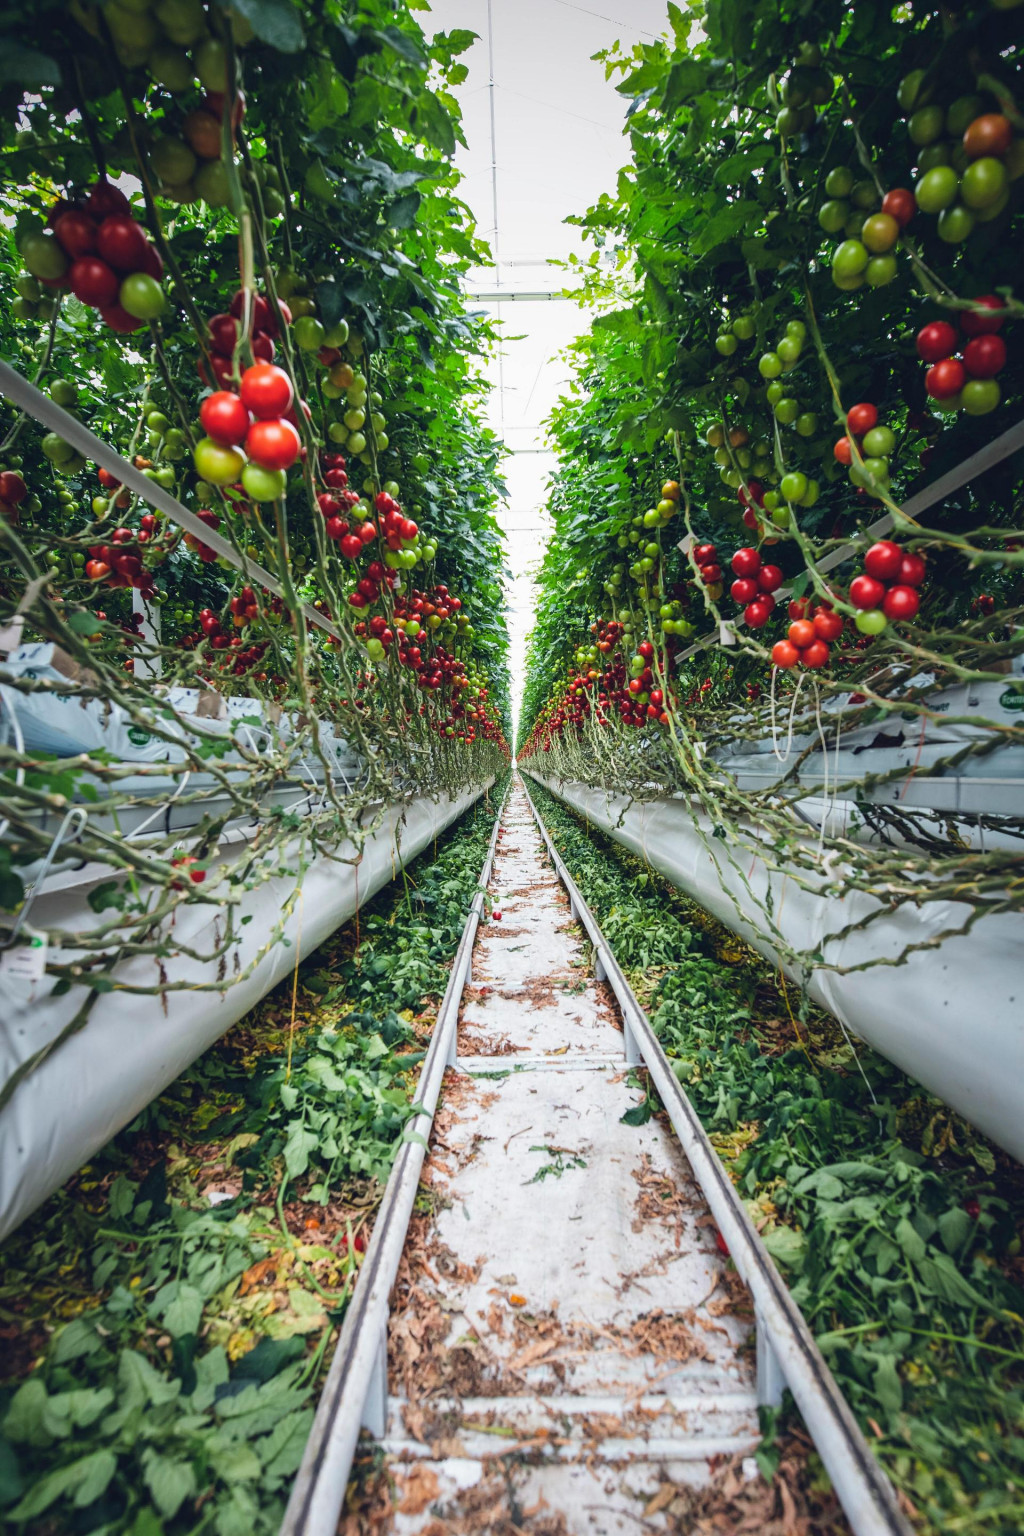 výnosy paradajok v hydroponických systémoch boli dvakrát vyššie ako výnosy paradajok v pôdnych systémoch.